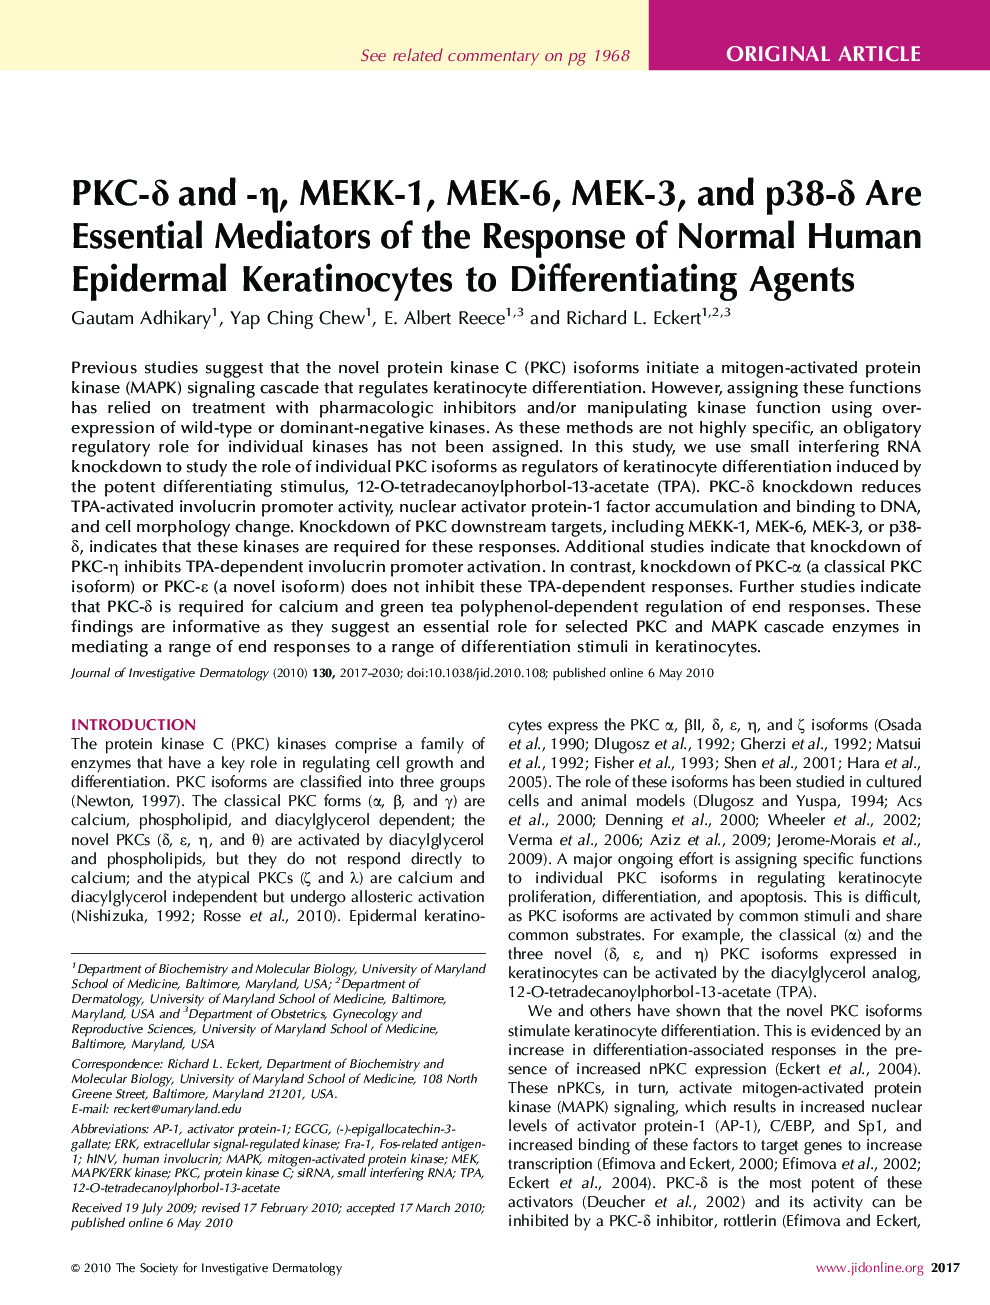 PKC-δ و -η, MEKK-1, MEK-6, MEK-3, و p38-δ واسطه ‌های ضروری پاسخ طبیعی اپیدرمال کراتینوسیت انسانی برای عوامل افتراقی هستند